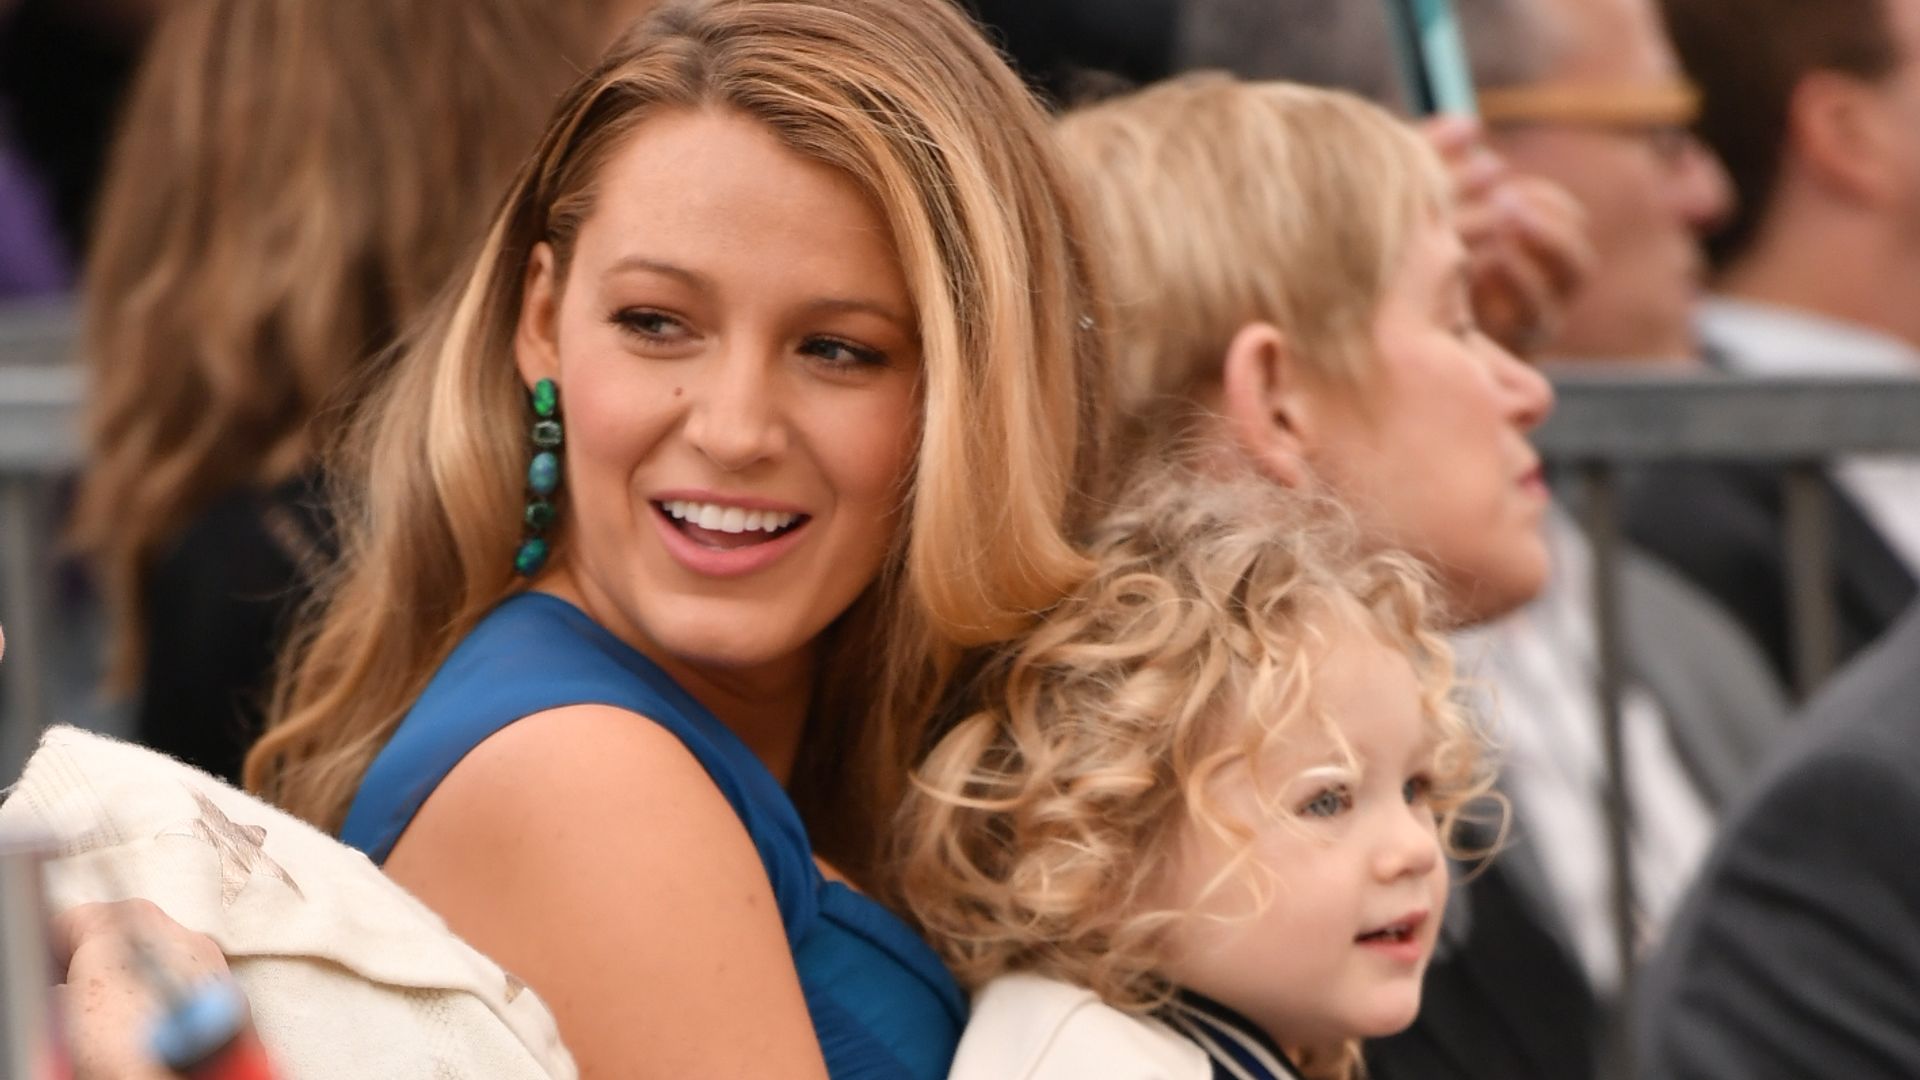 Blake Lively in blue dress holding daughterJames Reynolds